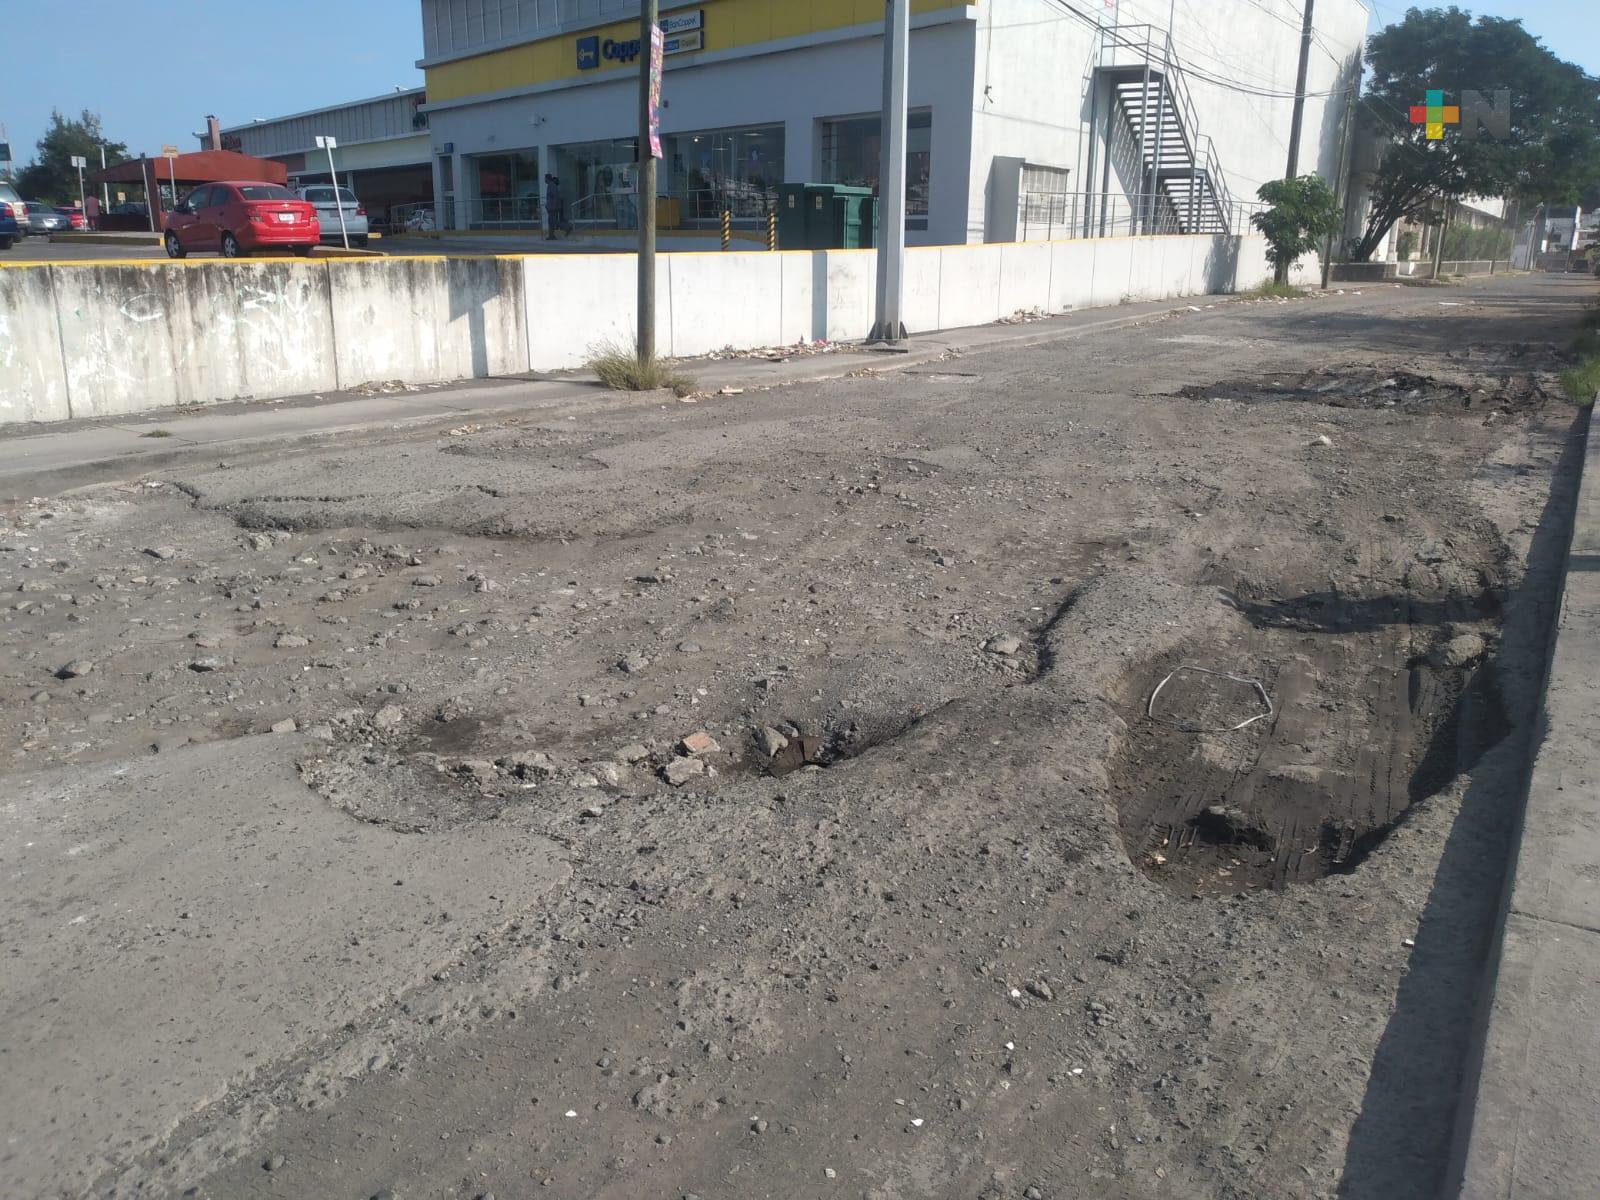 Vecinos molestos por calle dañada en fraccionamiento de Veracruz